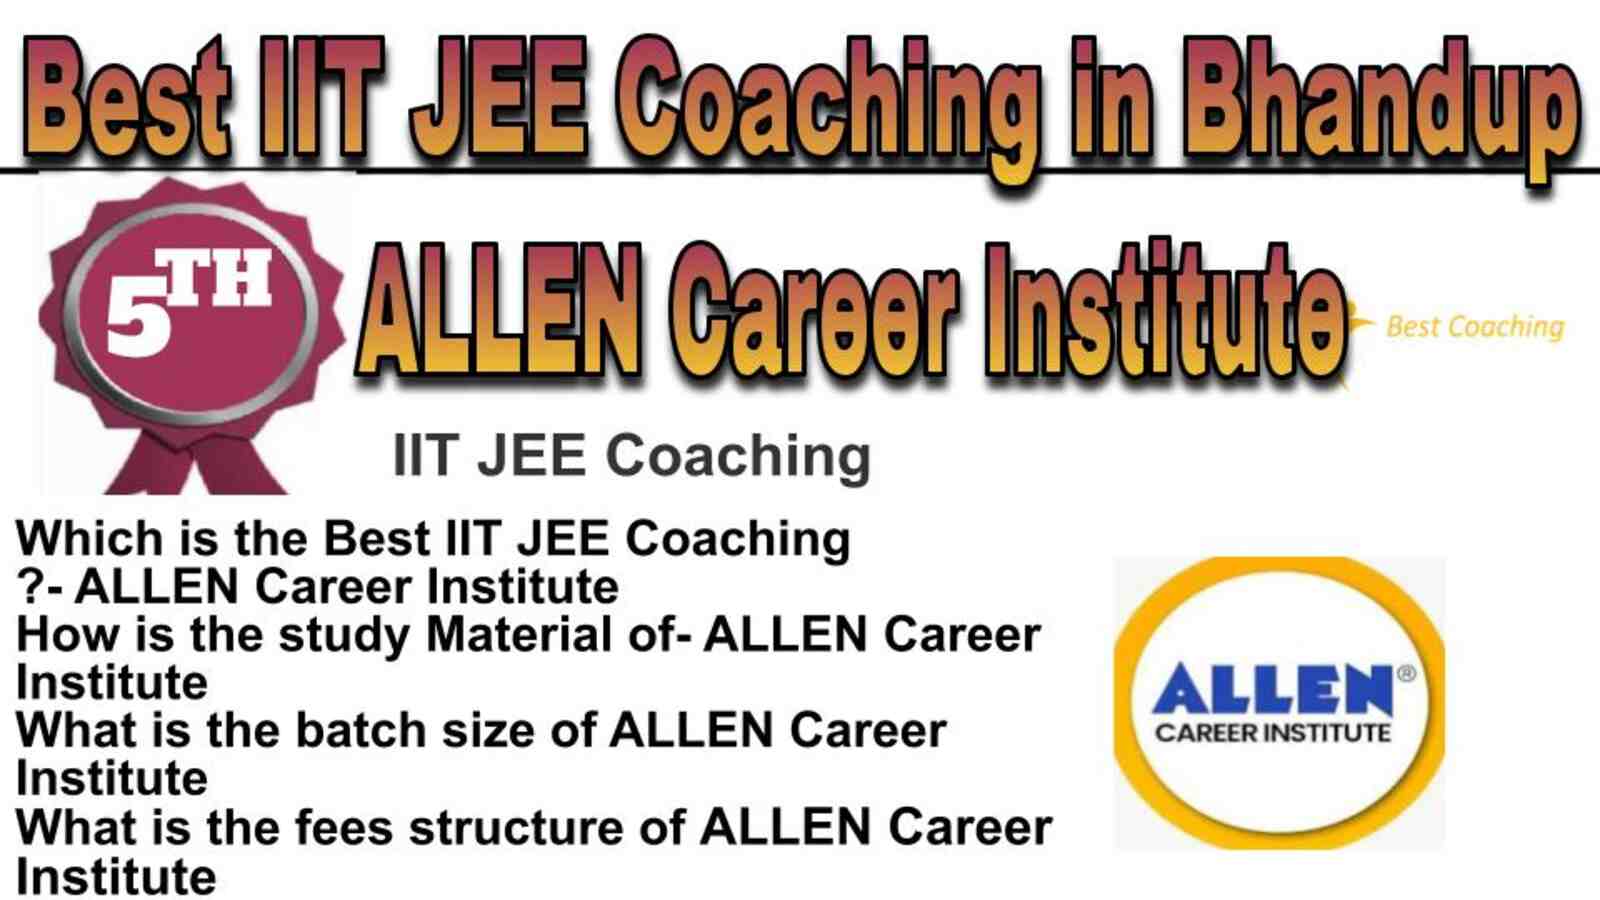 Rank 5 best IIT JEE coaching in Bhandup